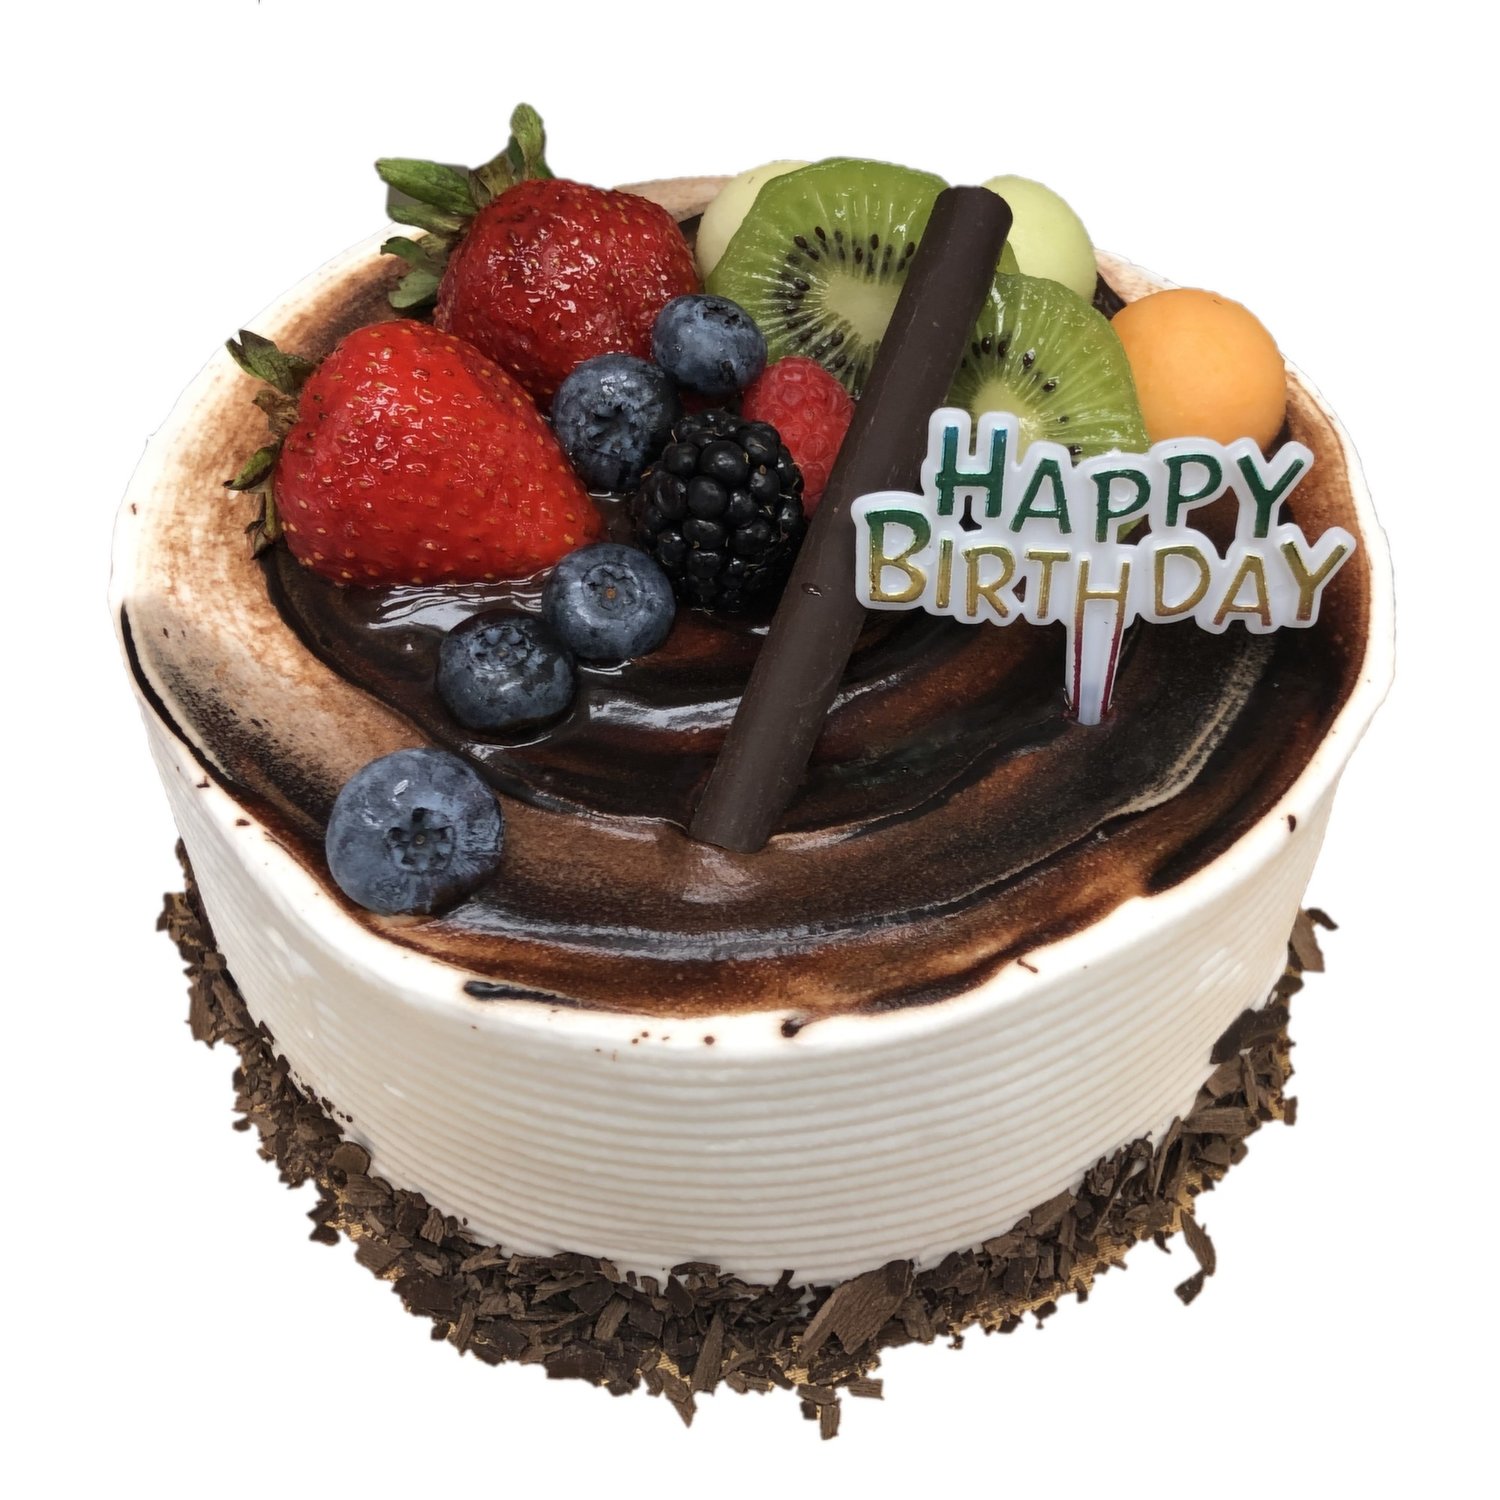 Drip cake | Fruit cake design, Chocolate drip cake, Chocolate fruit cake